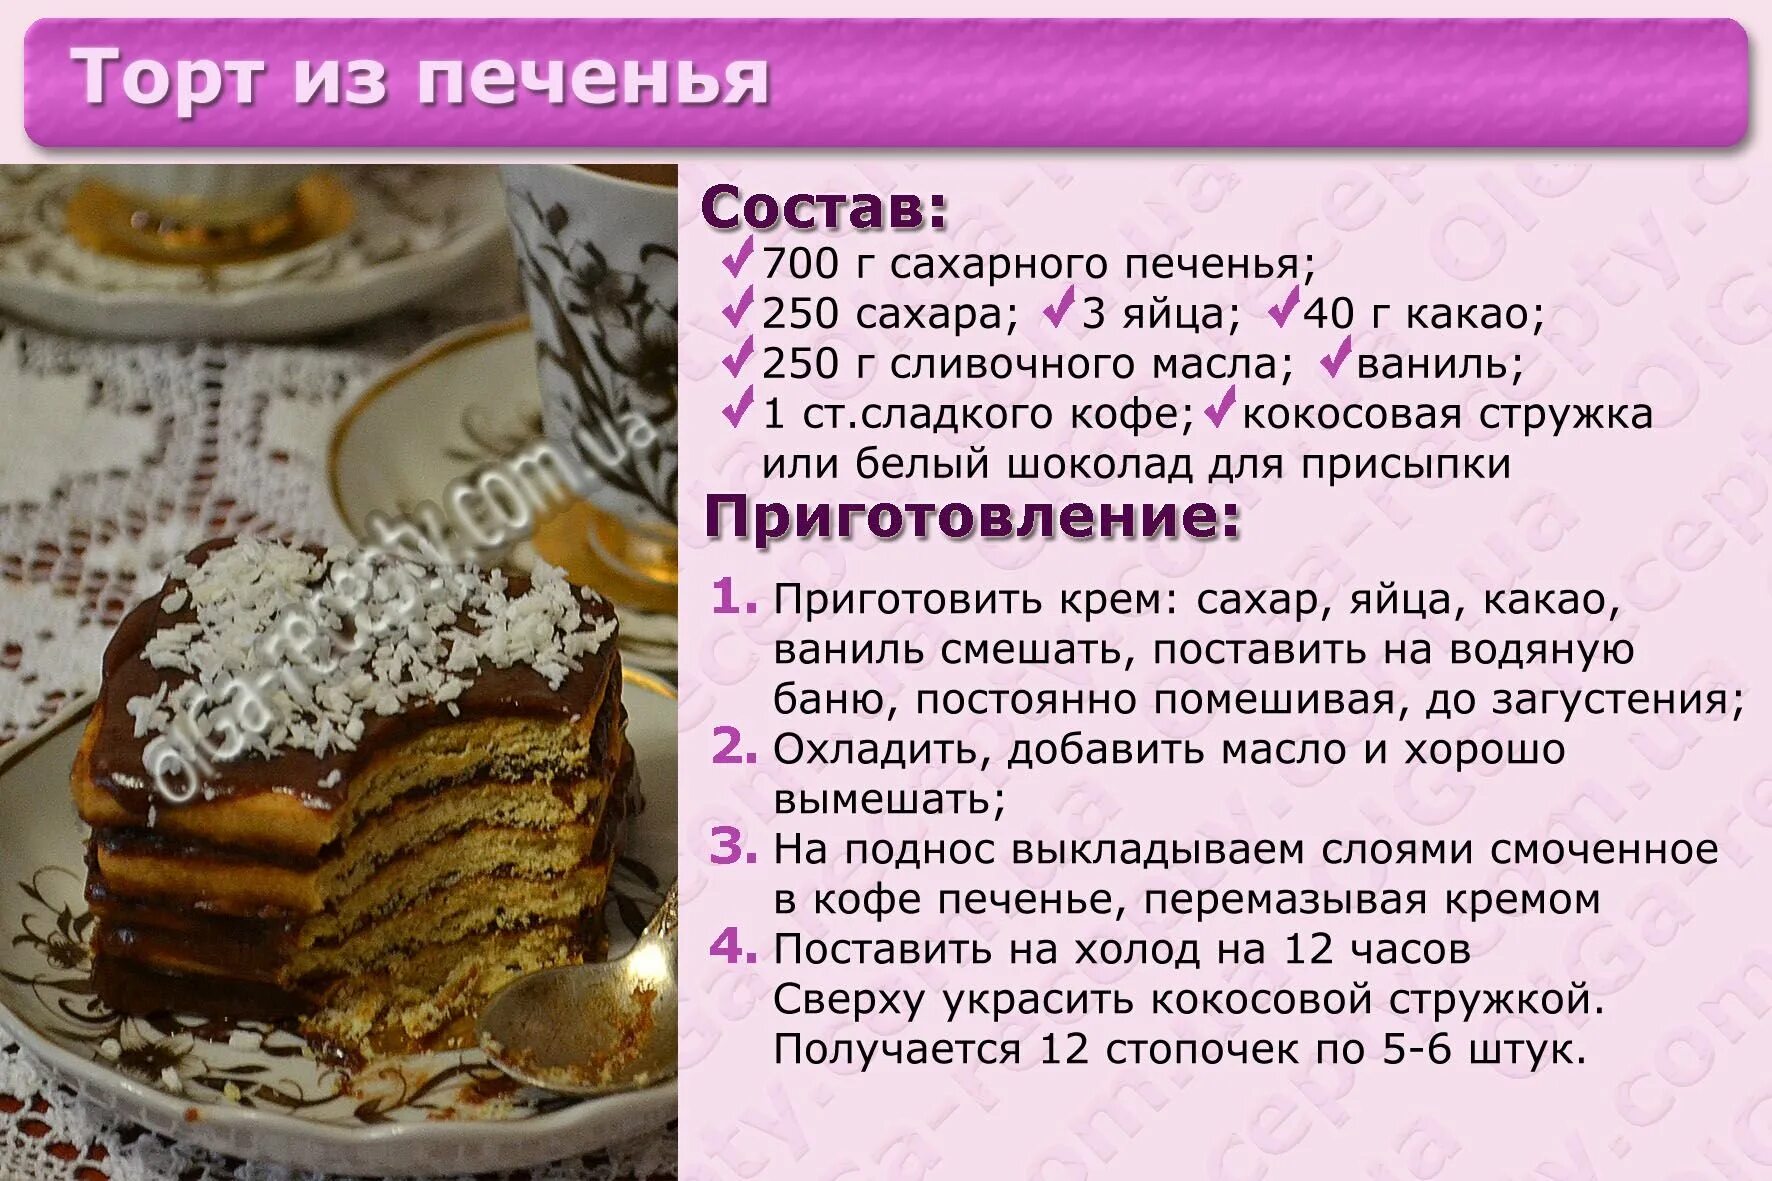 Рецепты без картинки. Картинки с рецептами тортов. Несложные рецепты тортов с картинкой. Рецепт торта картинки с описанием. Приготовление торта картинки.